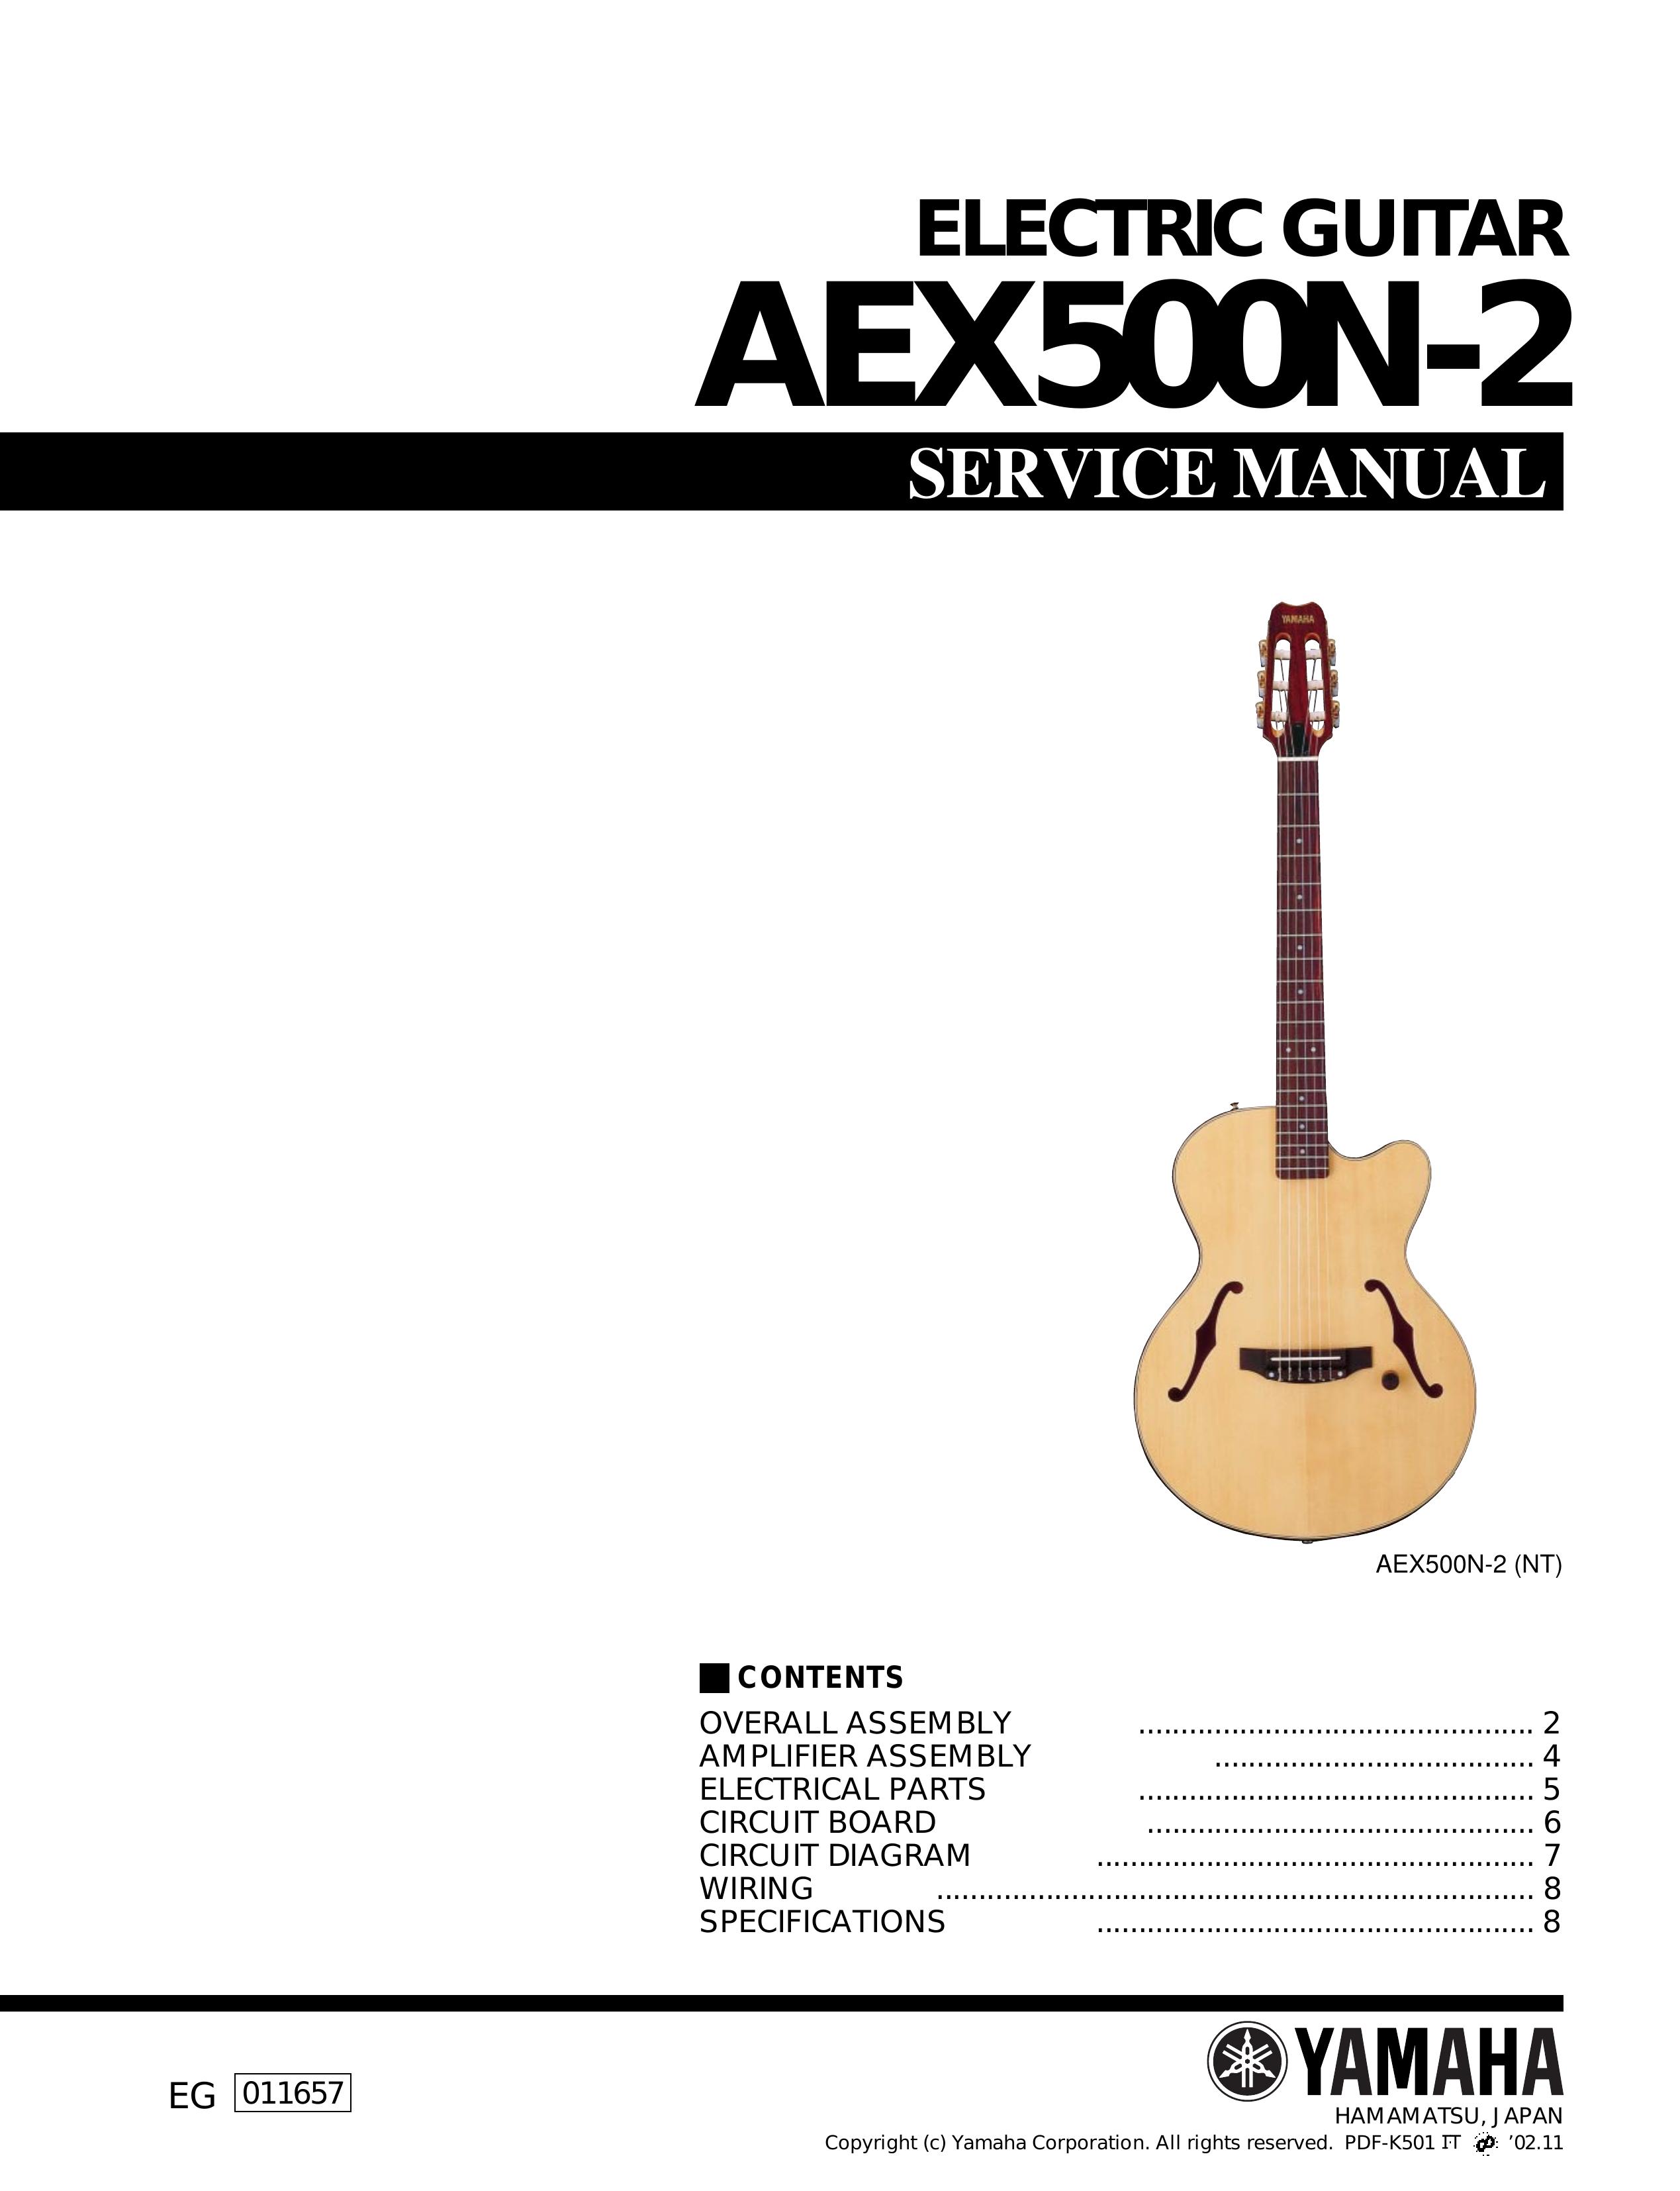 Yamaha AEX500N-2 Guitar User Manual